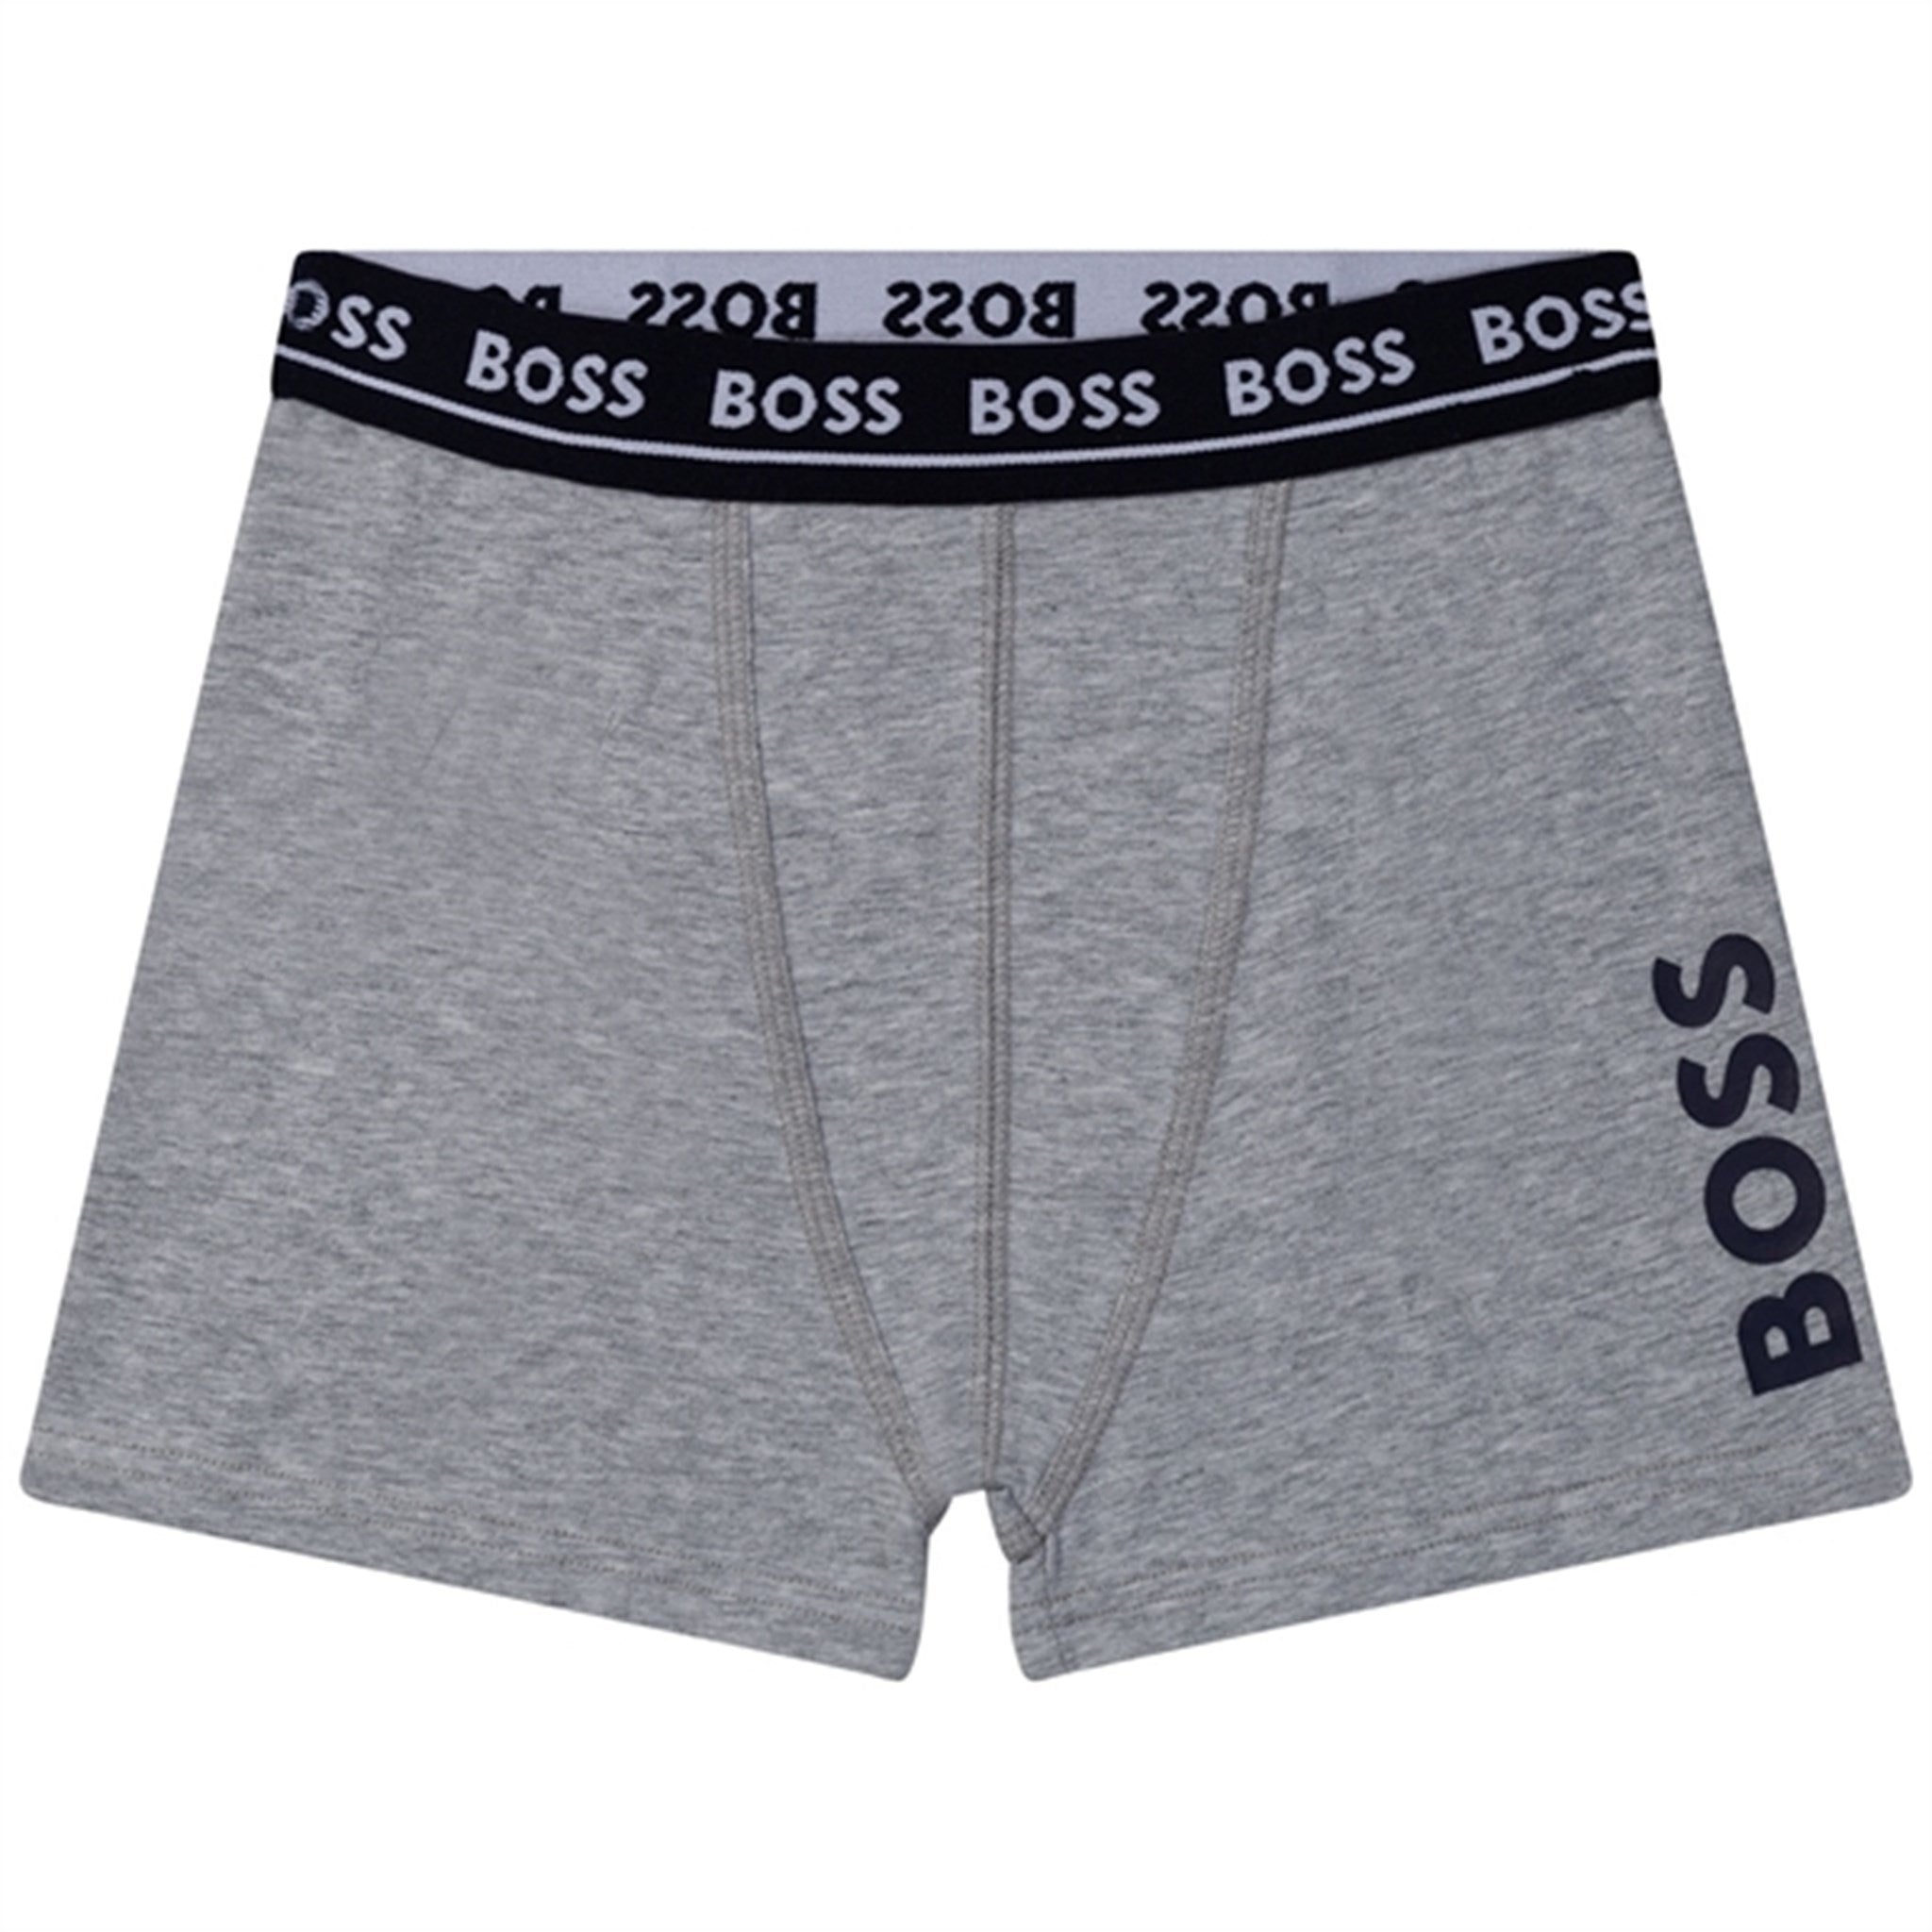 Hugo Boss Boxer Shorts 2-pack Black 3